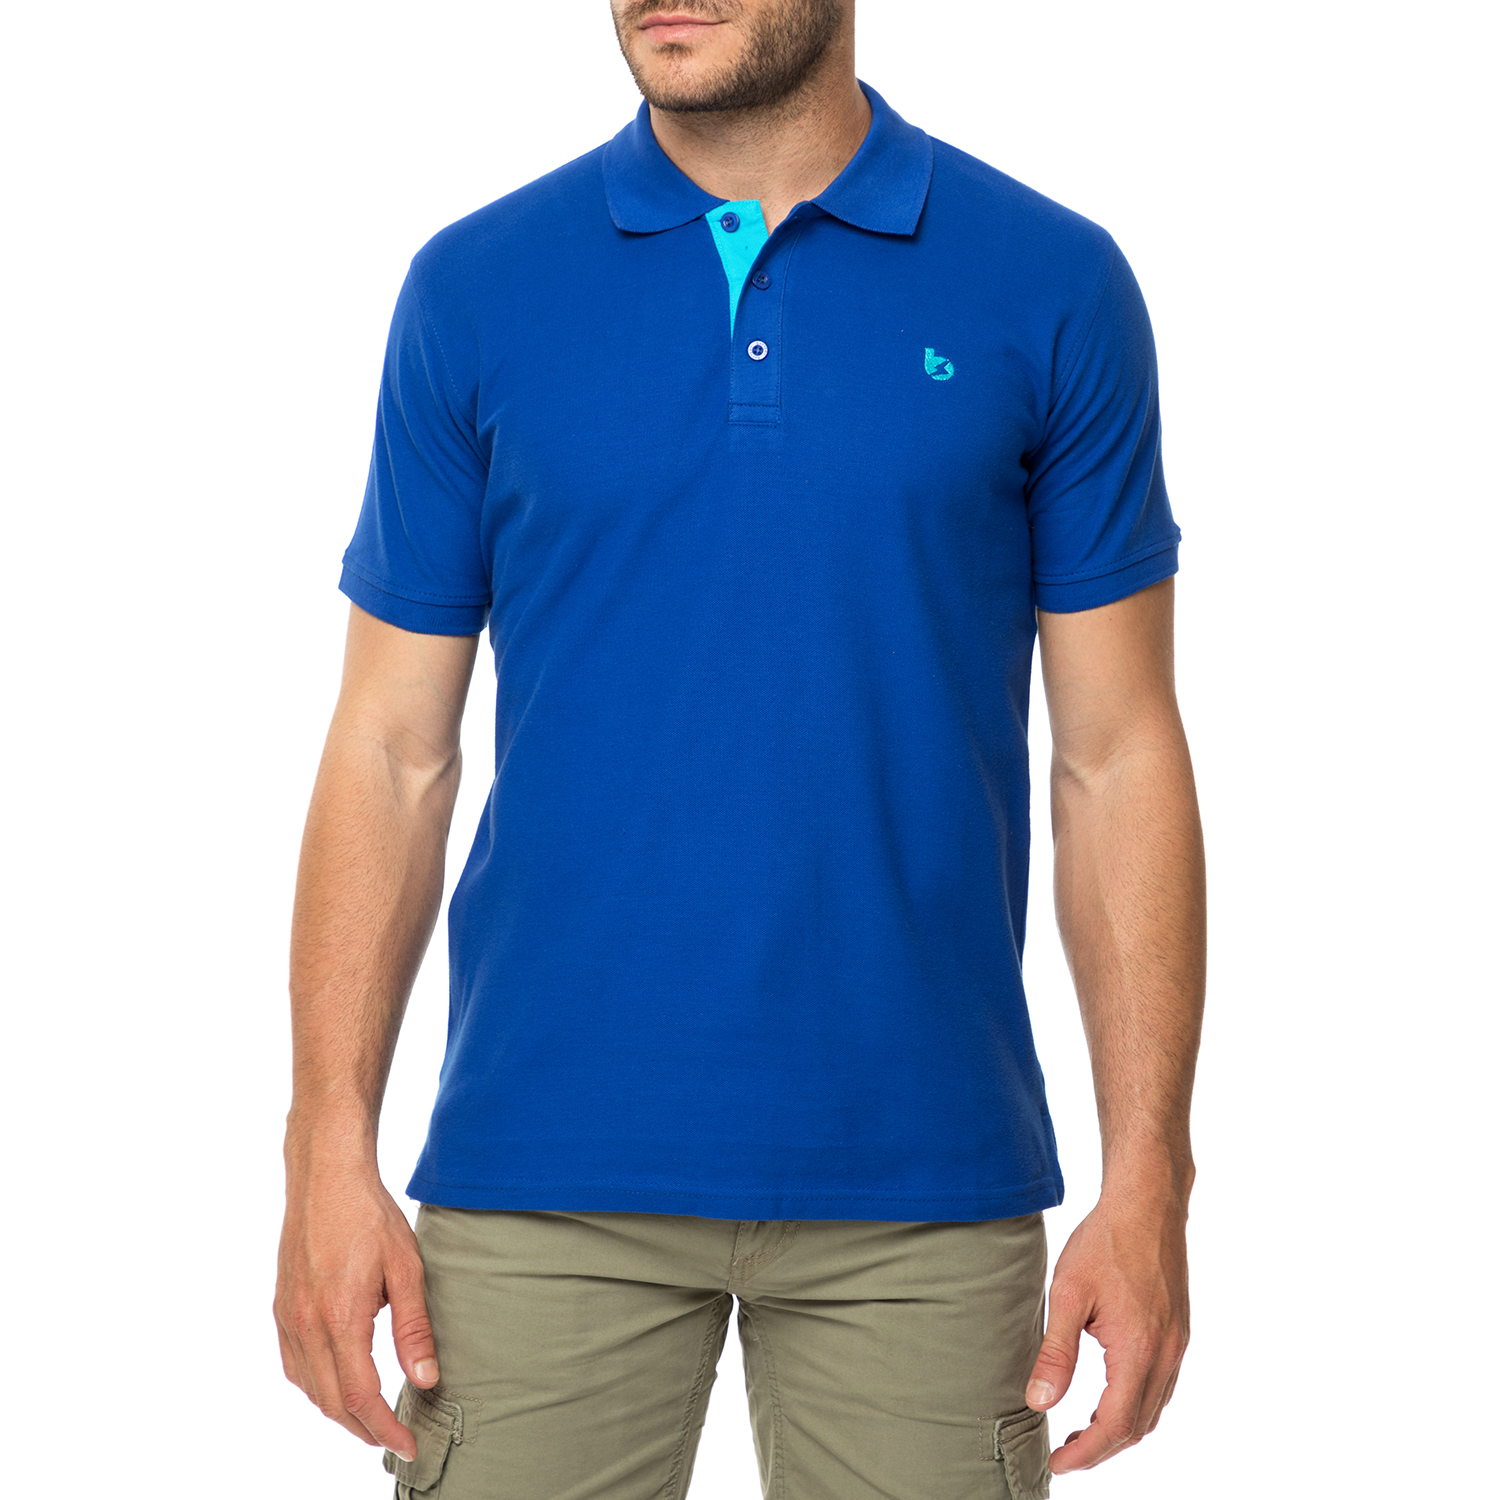 Ανδρικά/Ρούχα/Μπλούζες/Πόλο BATTERY - Ανδρικό πόλο t-shirt BATTERY μπλε royal